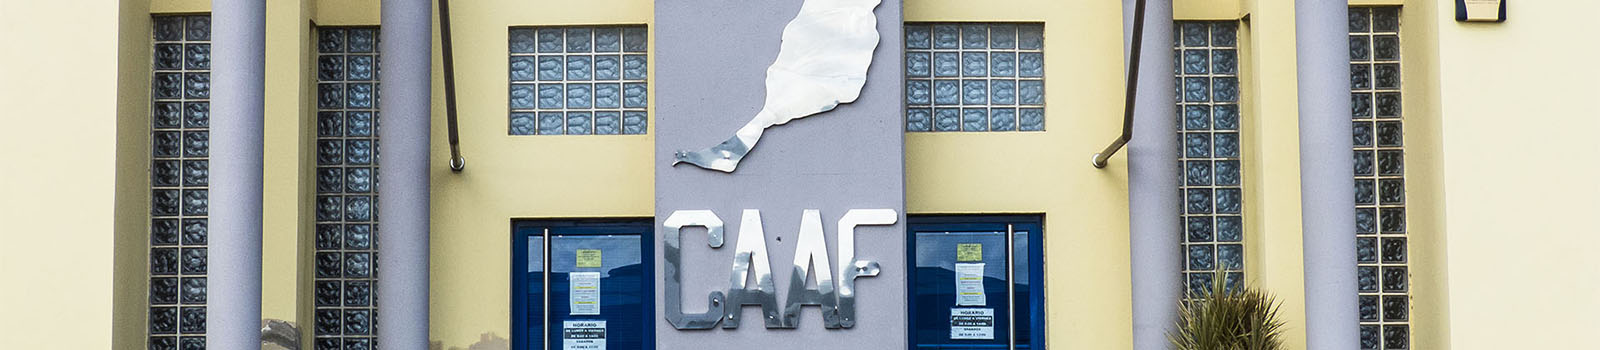 CAAF (Consorcio de Abastecimiento de Aguas a Fuerteventura) in Puerto del Rosario Fuerteventura.